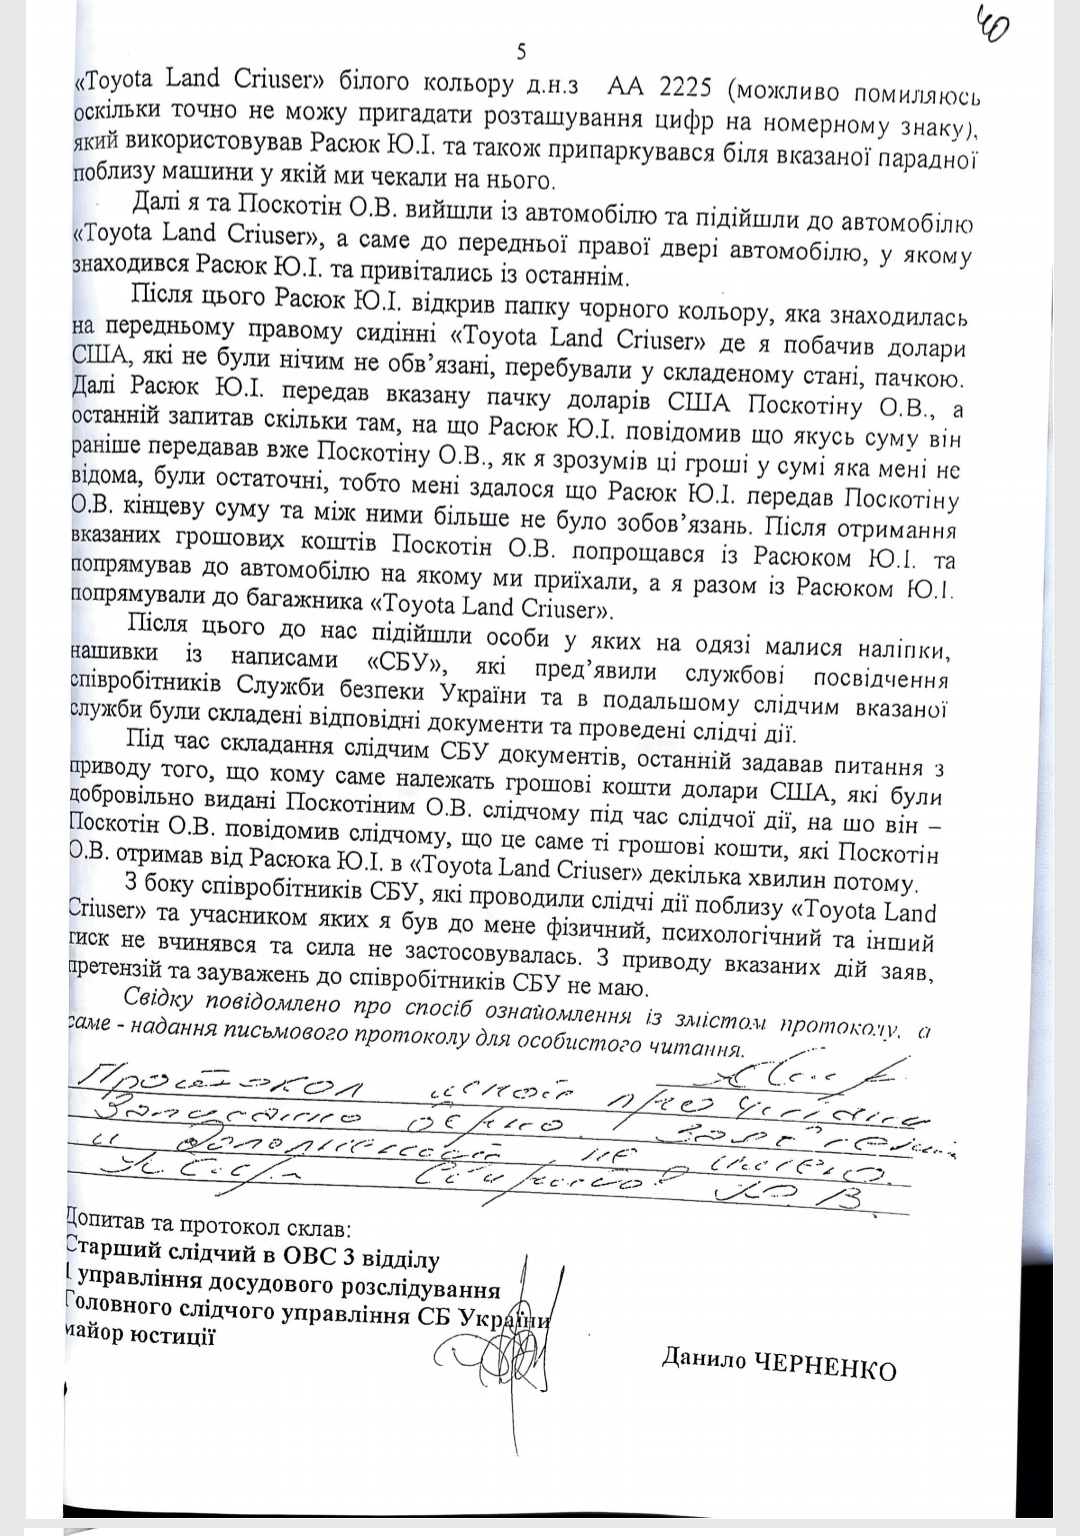 протокол допроса Юрия Свиридова по делу о заказе убийства в СБУ